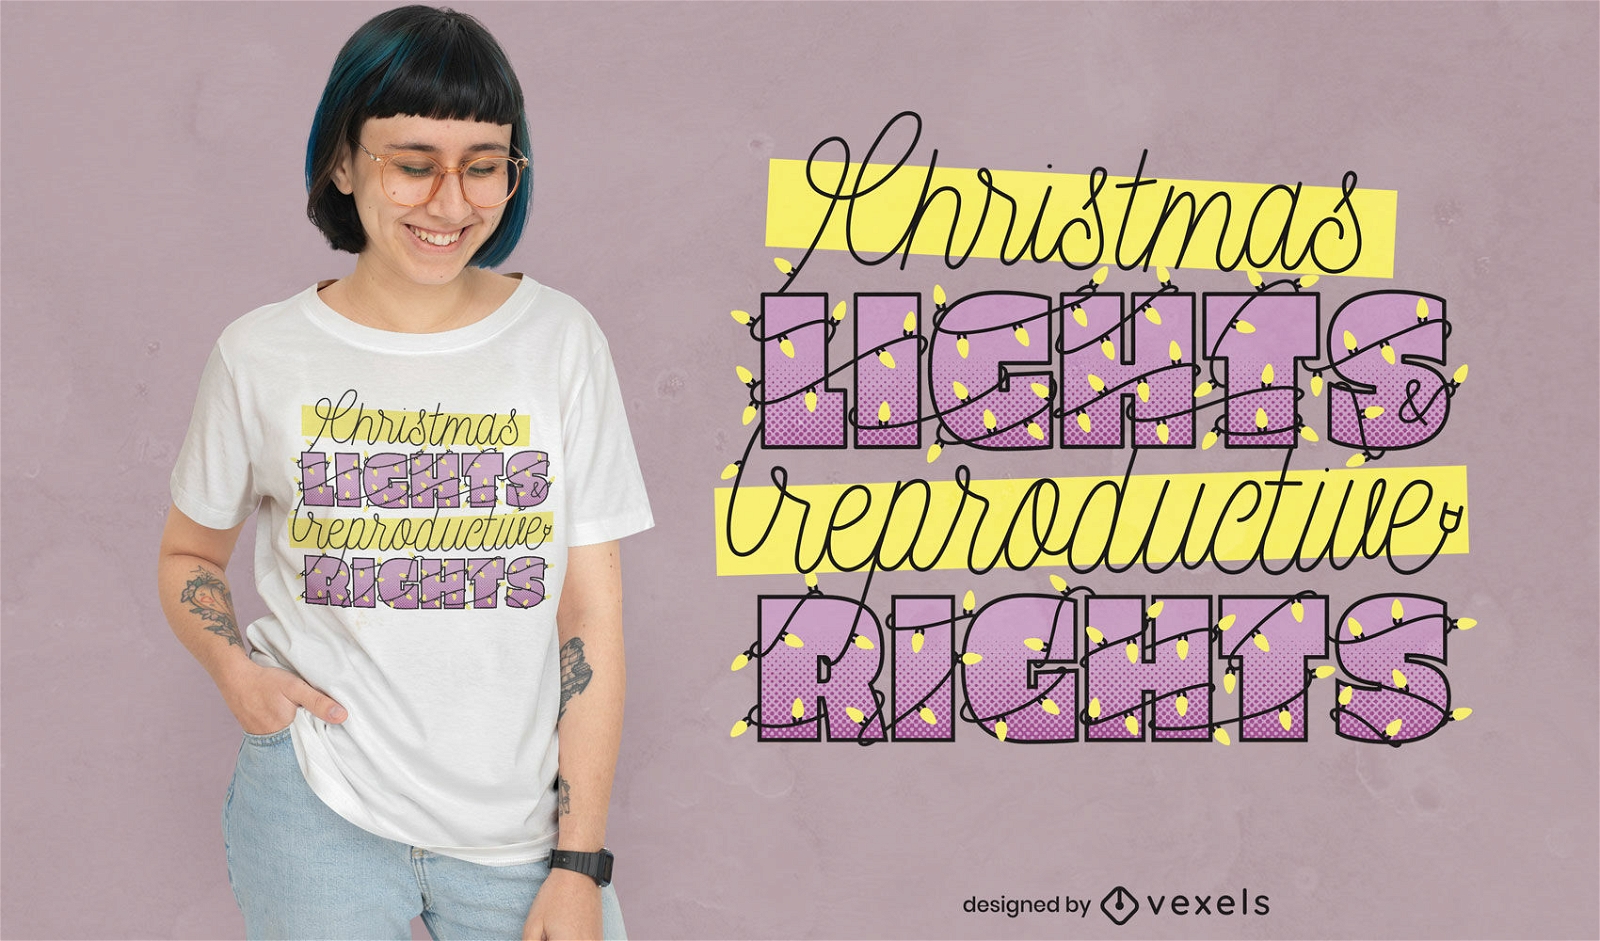 Diseño de camiseta navideña de derechos reproductivos.